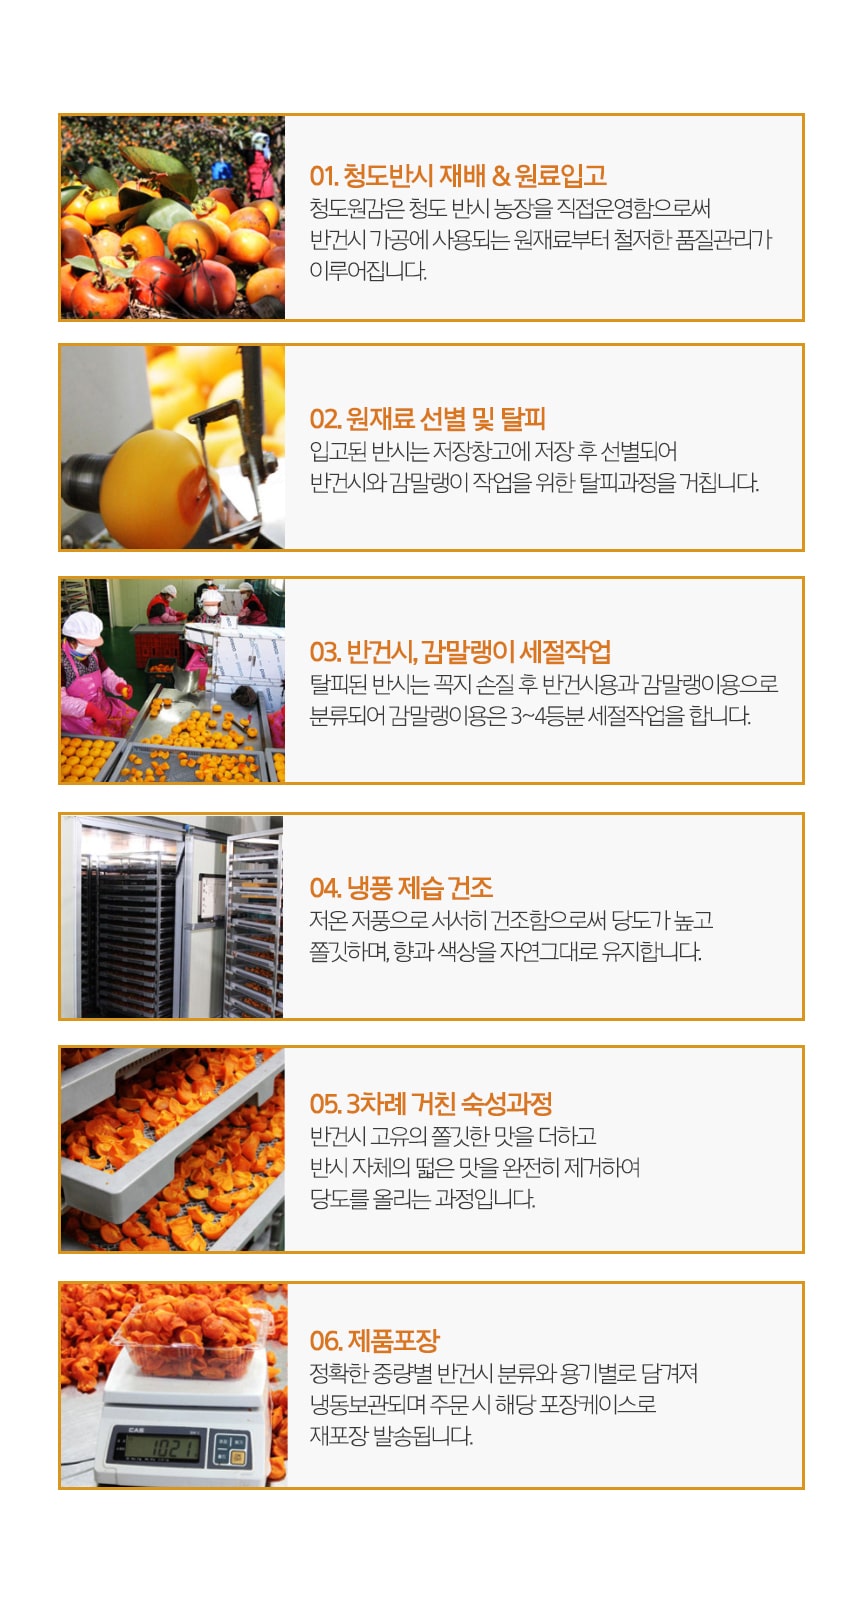 韓國食品-Semi-dried Persimmon Mix Set (Gift set start delivery from 20th September)